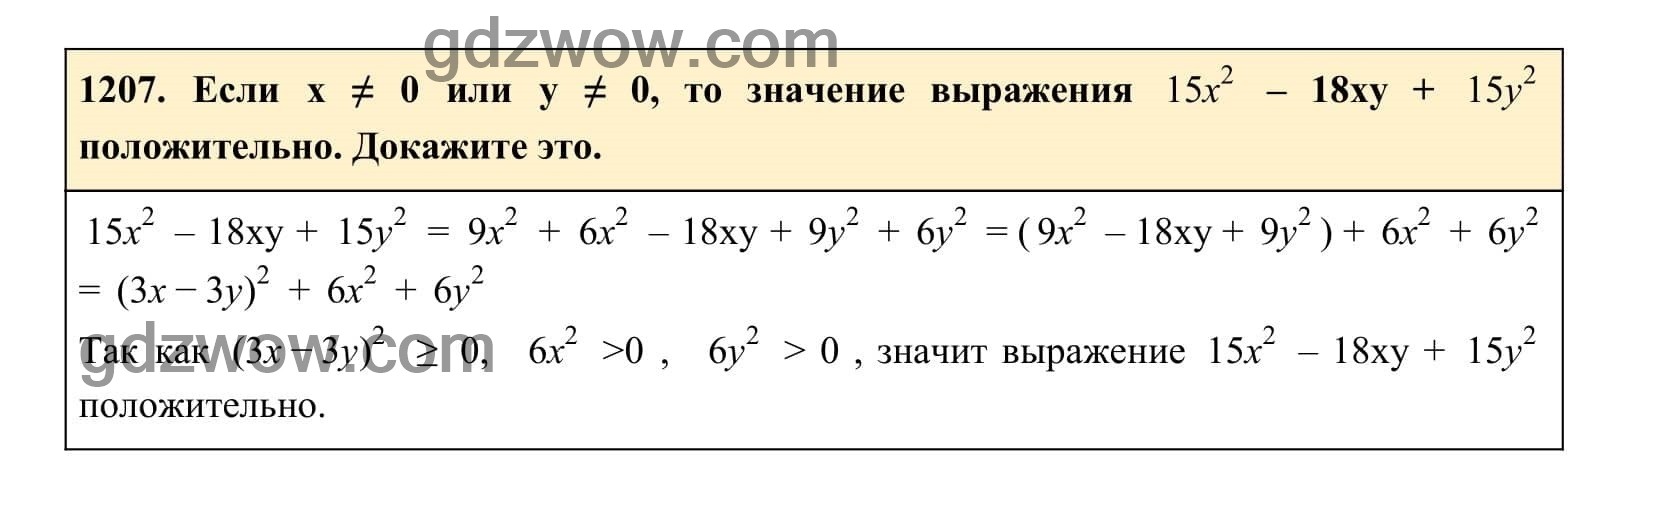 Упражнение 1207 - ГДЗ по Алгебре 7 класс Учебник Макарычев (решебник) - GDZwow